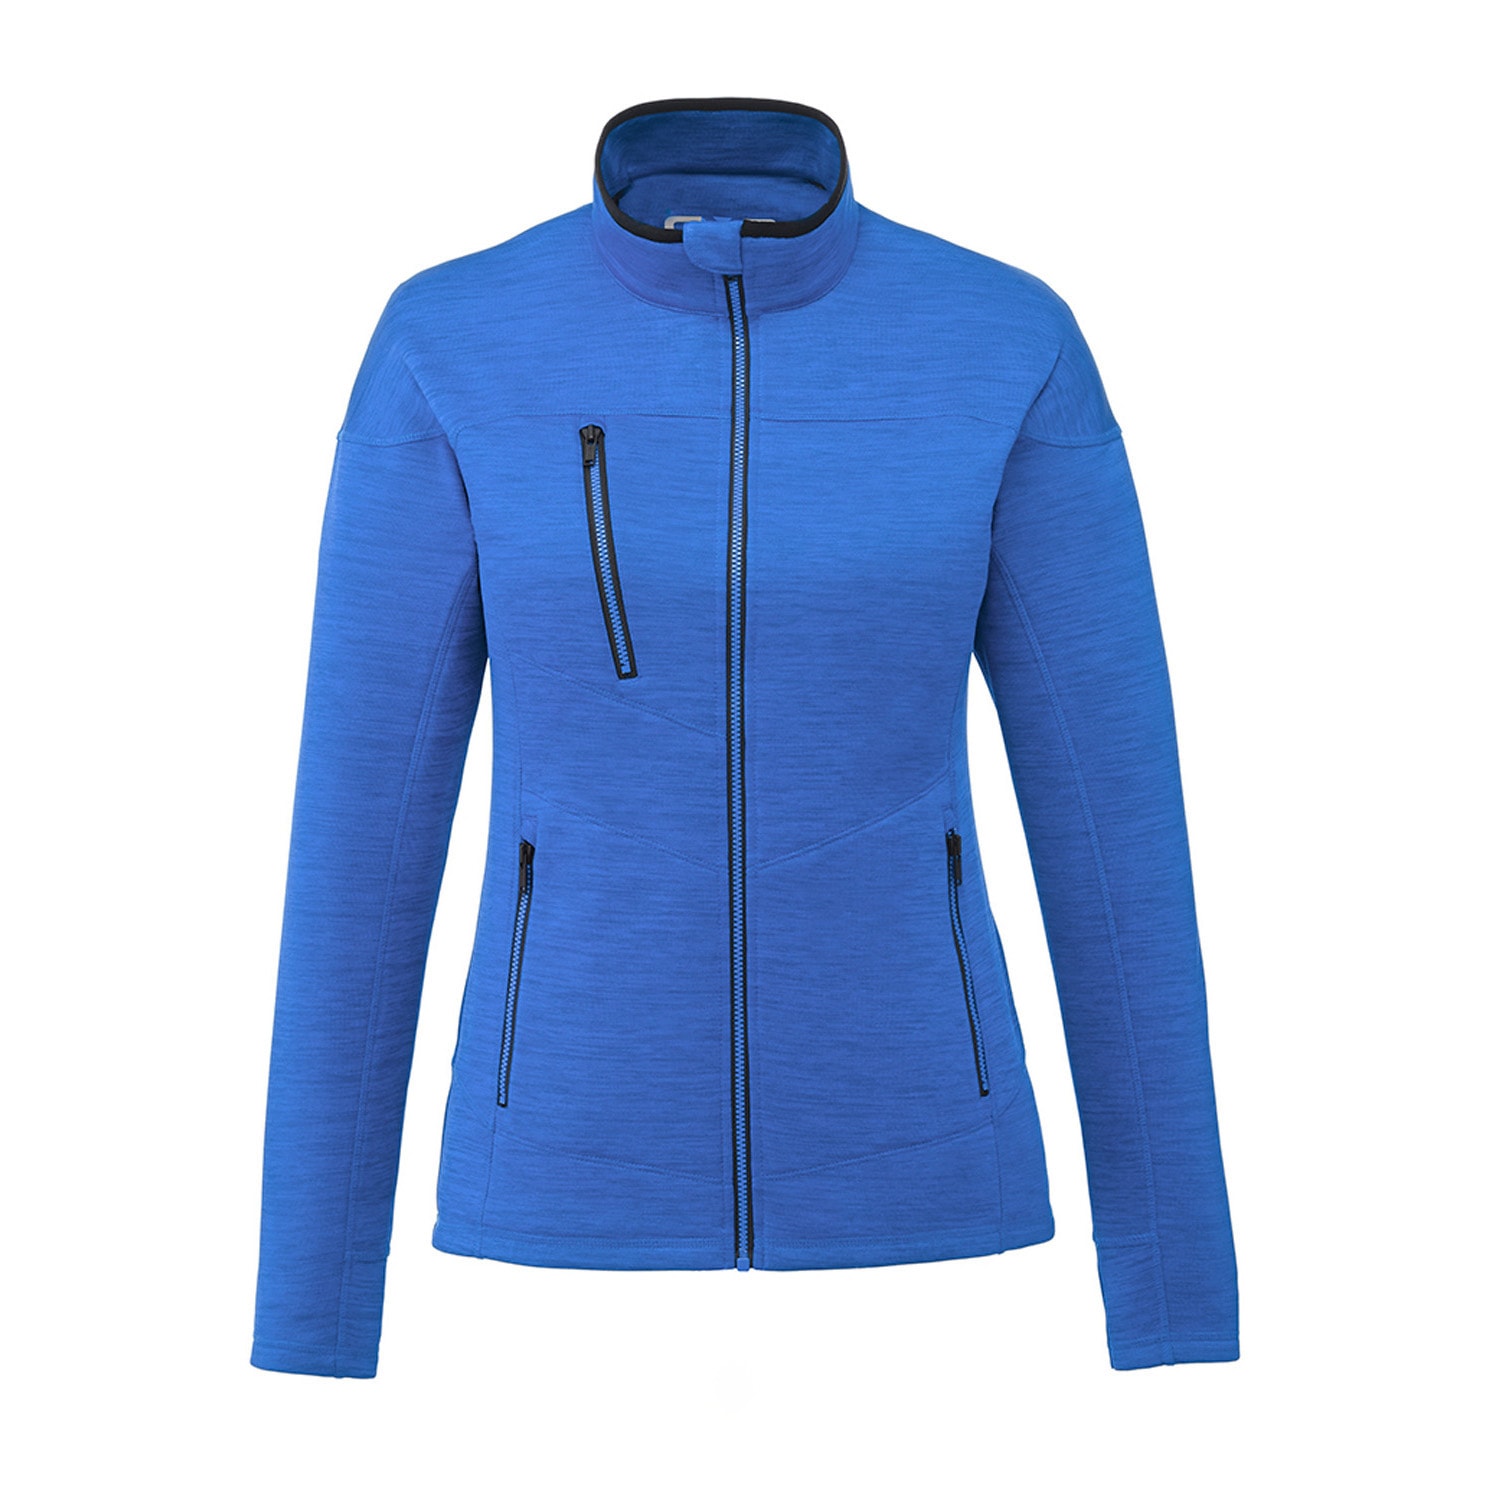 CX2 - Dynamic - Women's Fleece Jacket